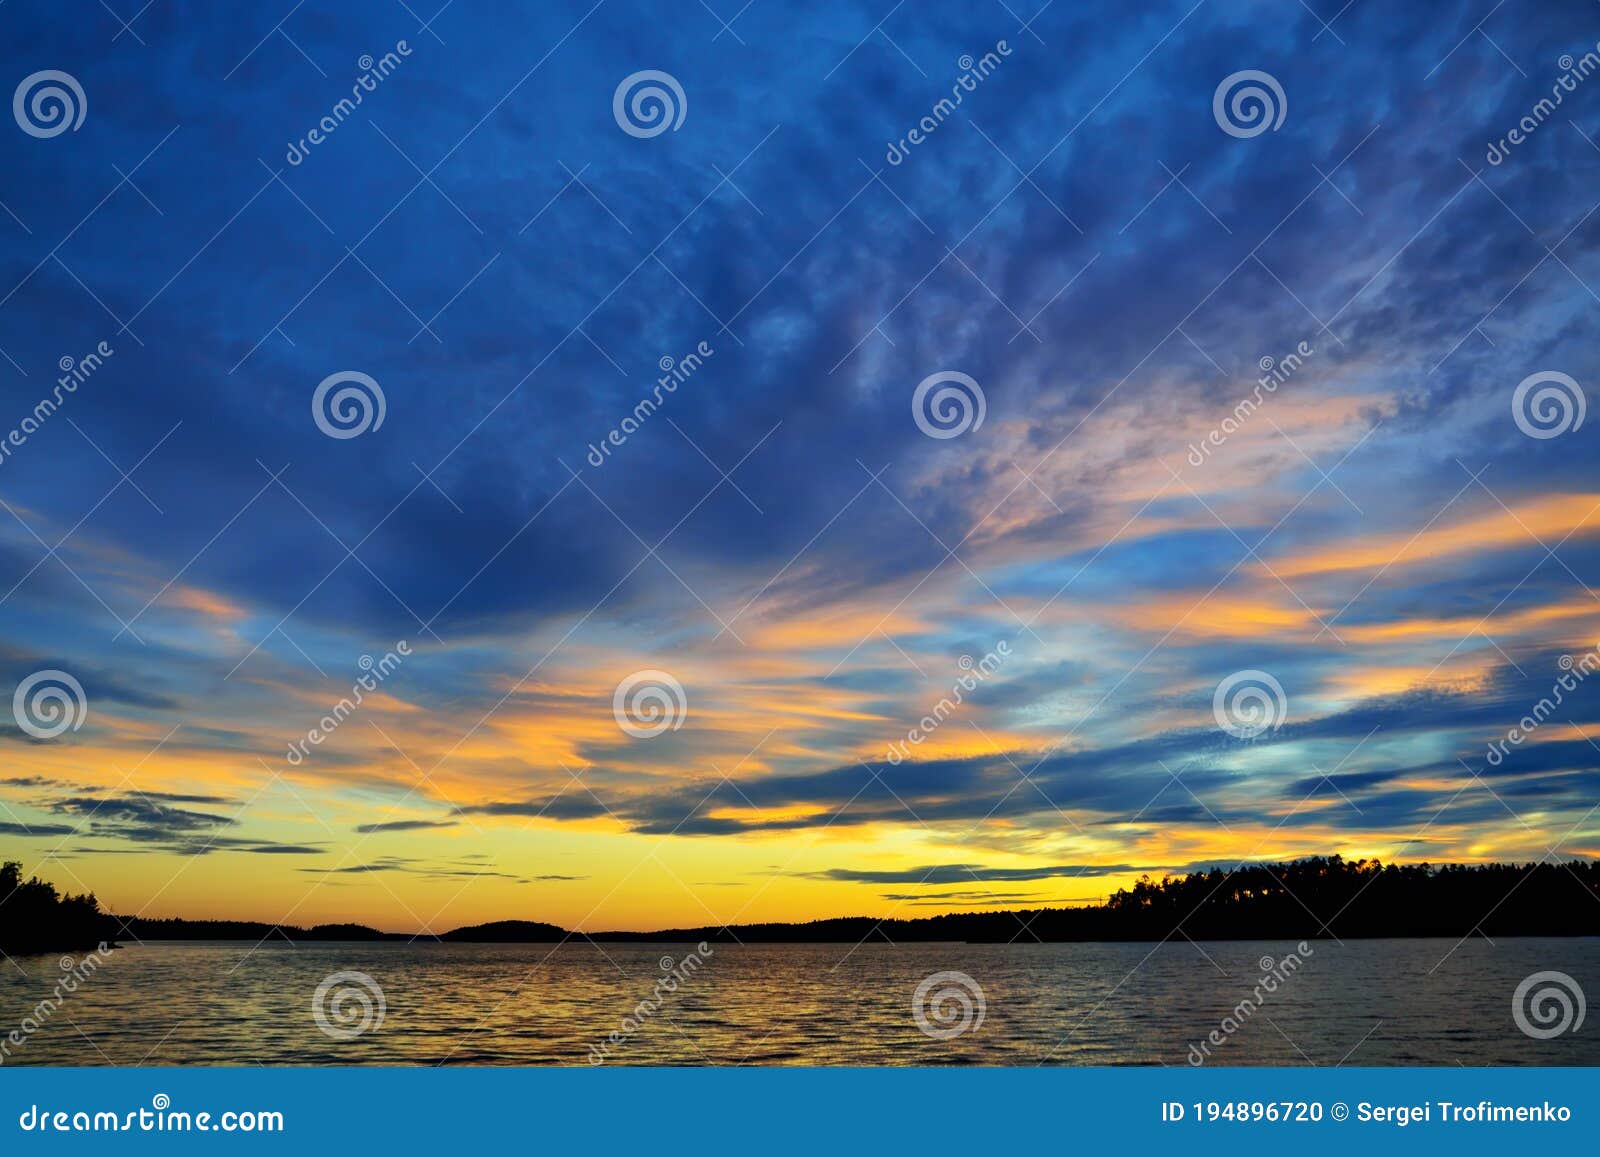 beautiful fiery sunset. lake keret, northern karelia, russia